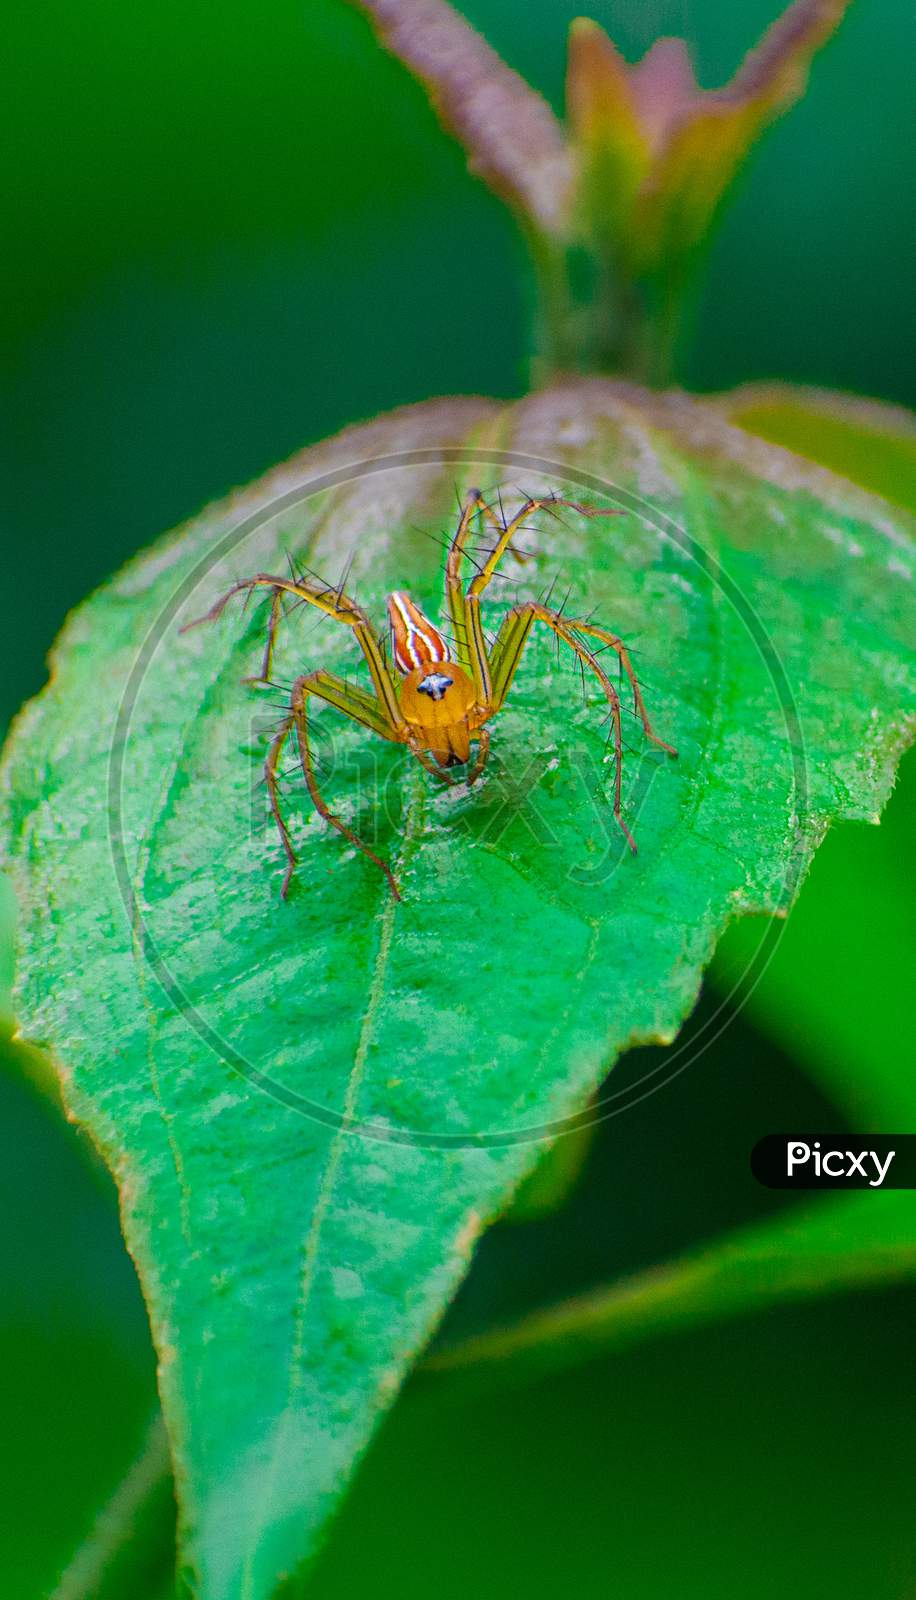 Leaf on spider